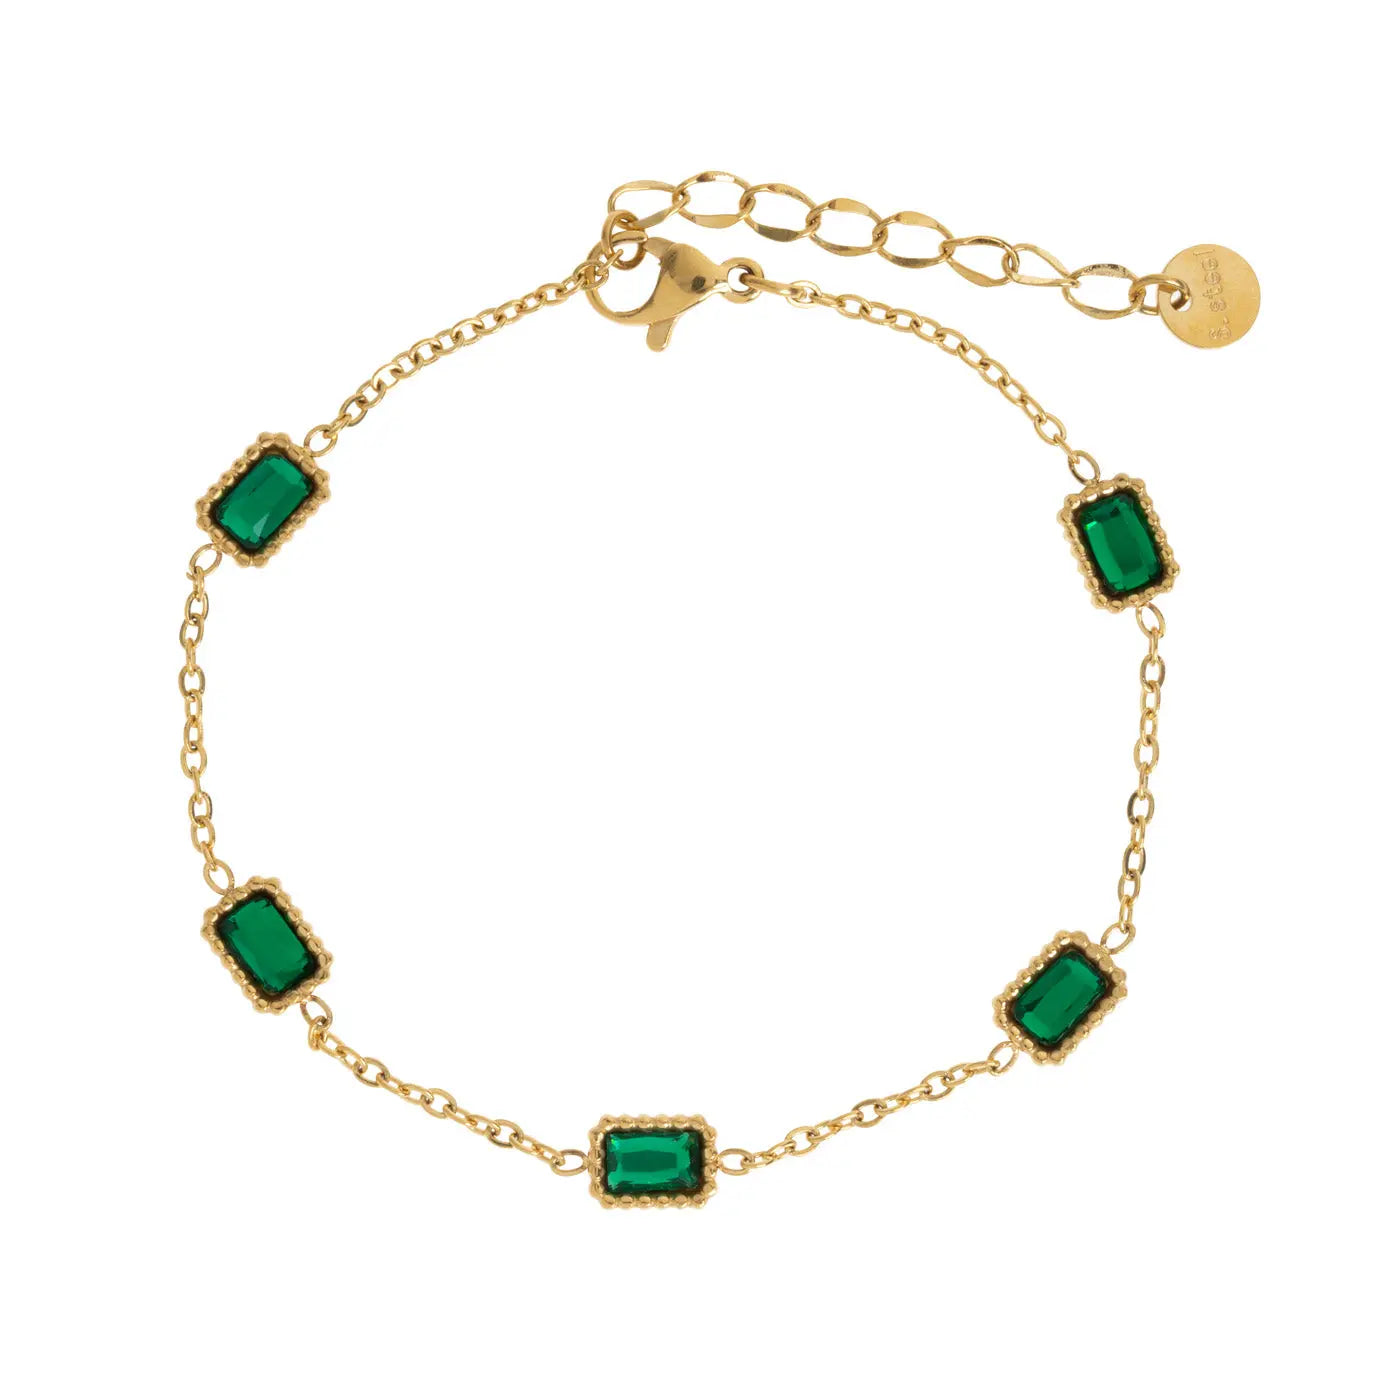 Isla - Green Rectangular Crystal Chain Bracelet Stainless Steel